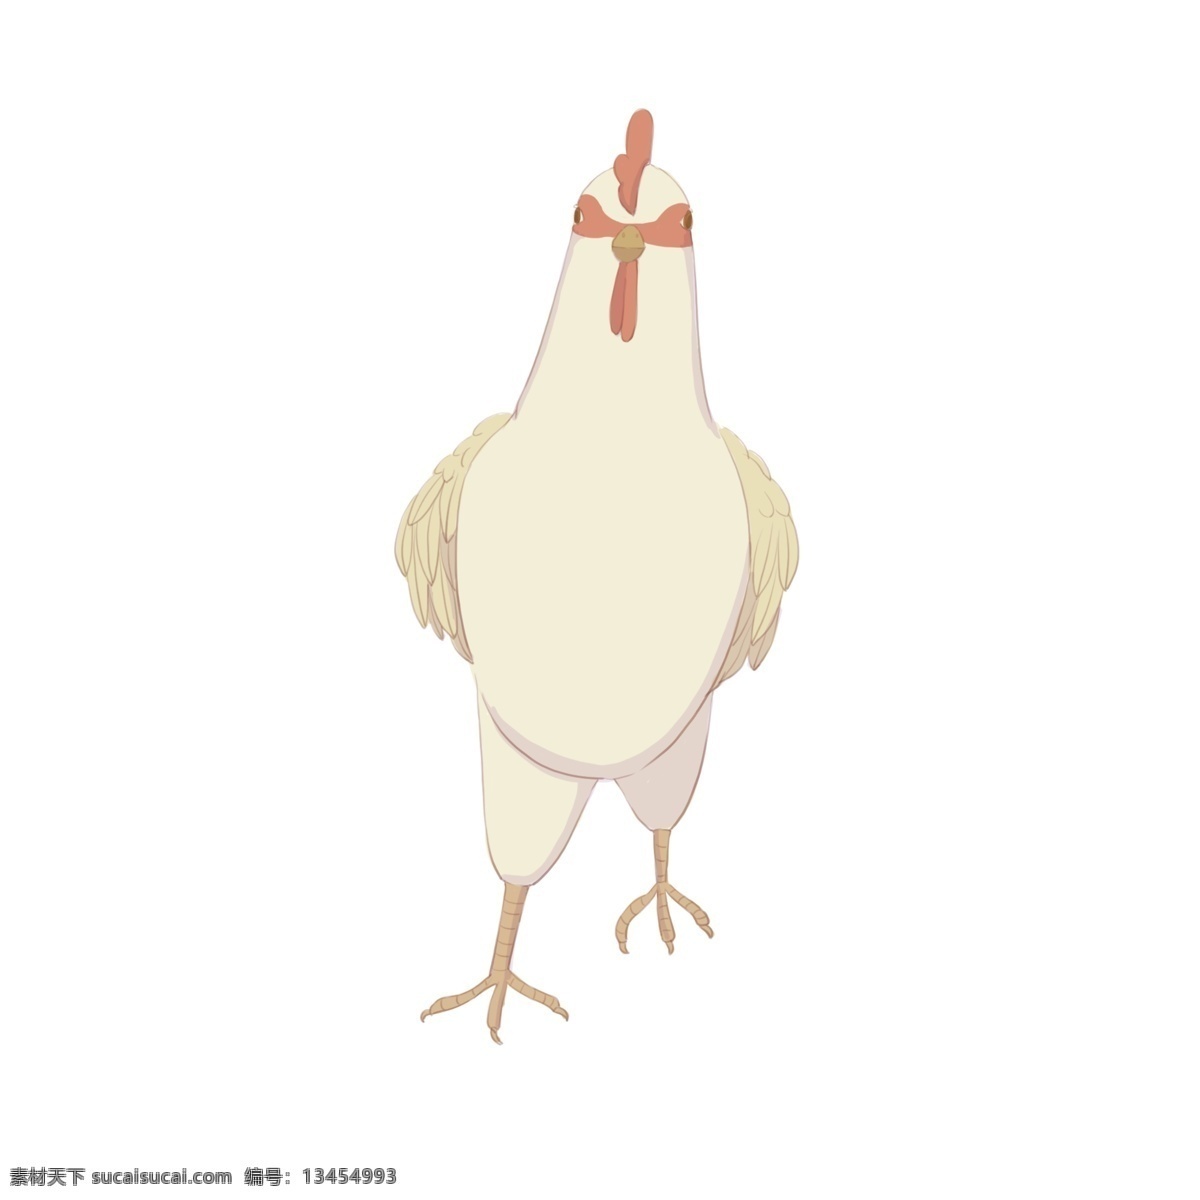 手绘 动物 生物 母鸡 商用 白鸡